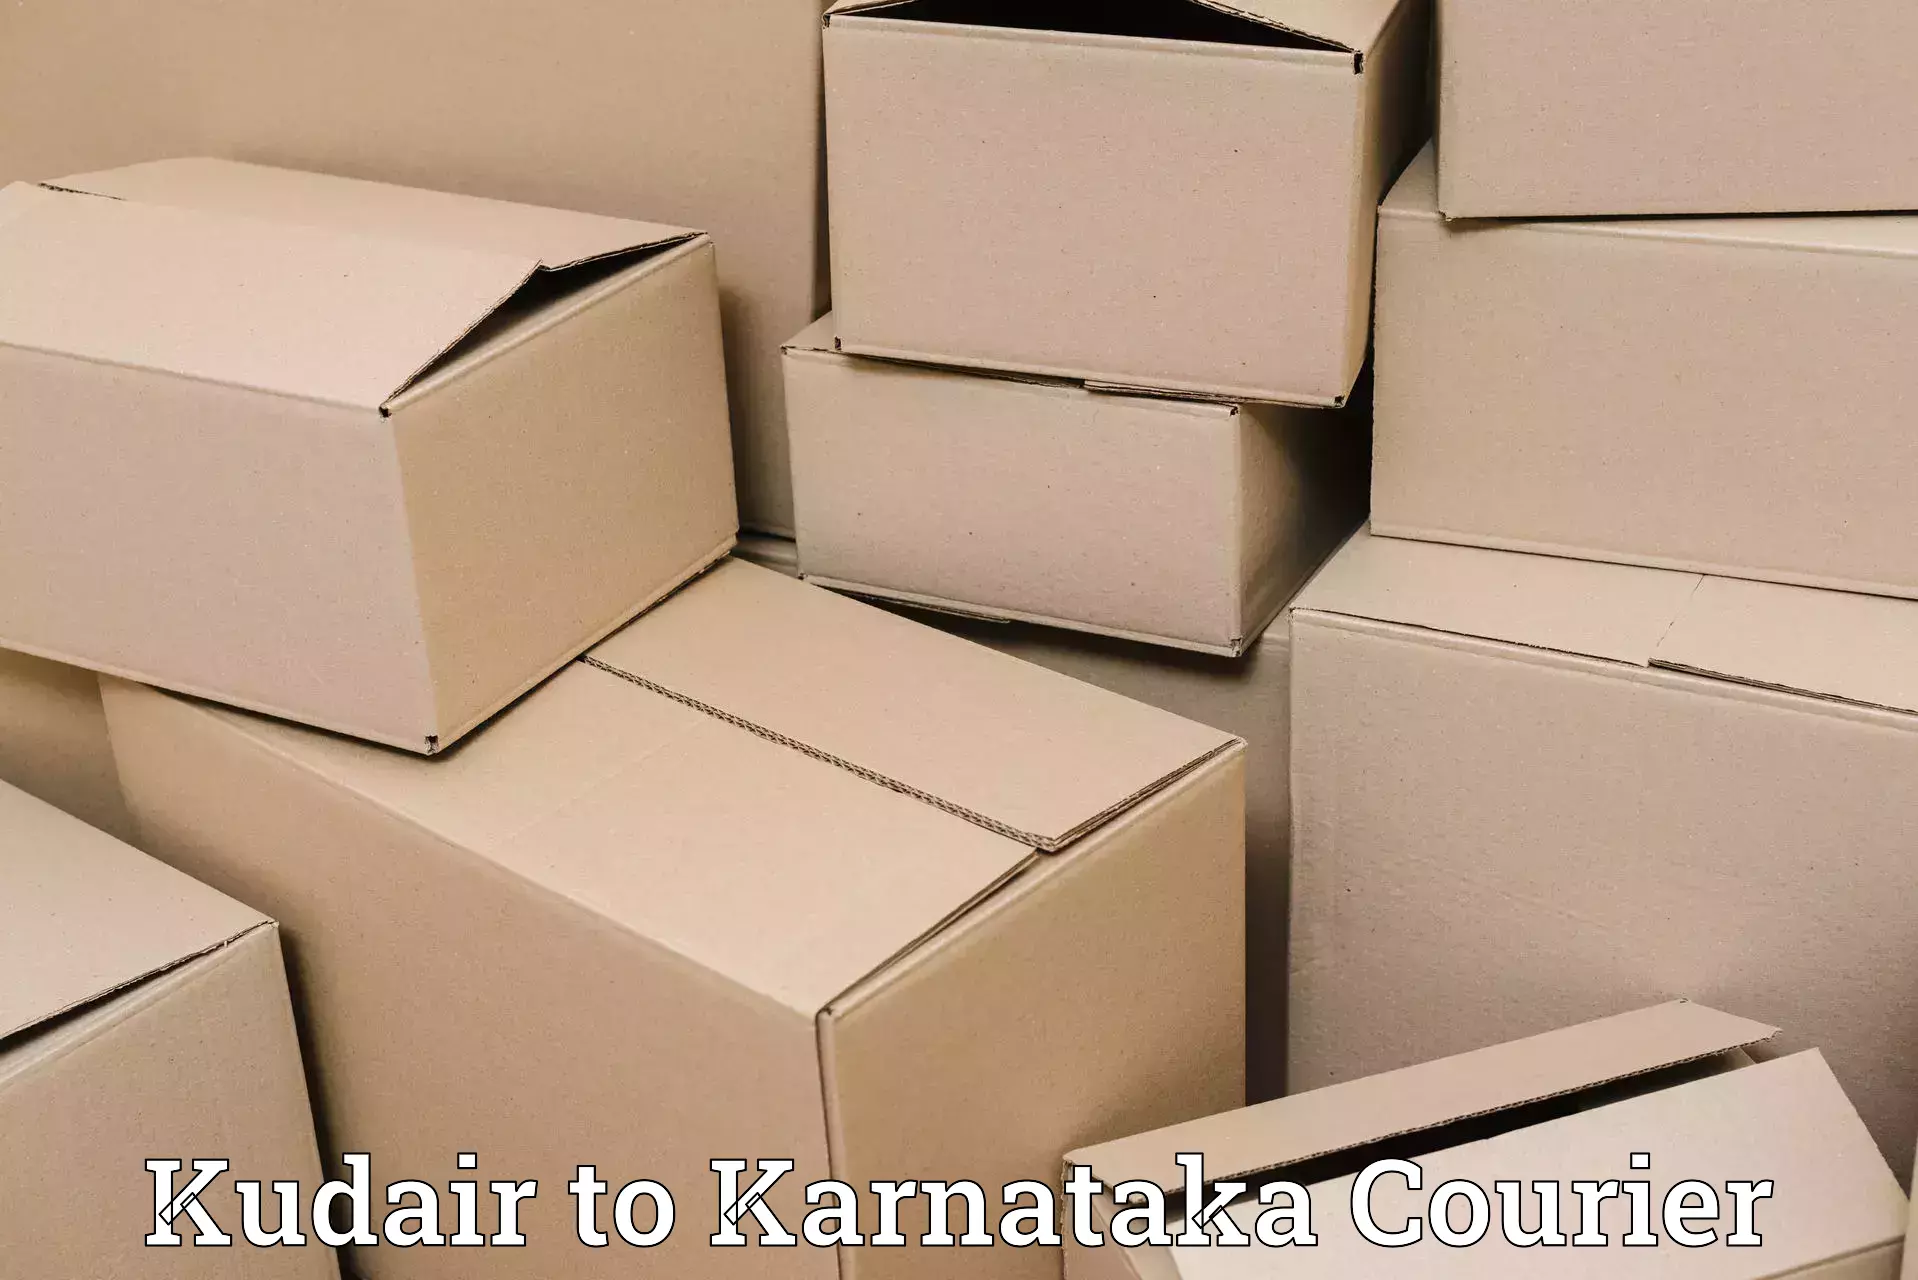 Supply chain delivery Kudair to Karnataka